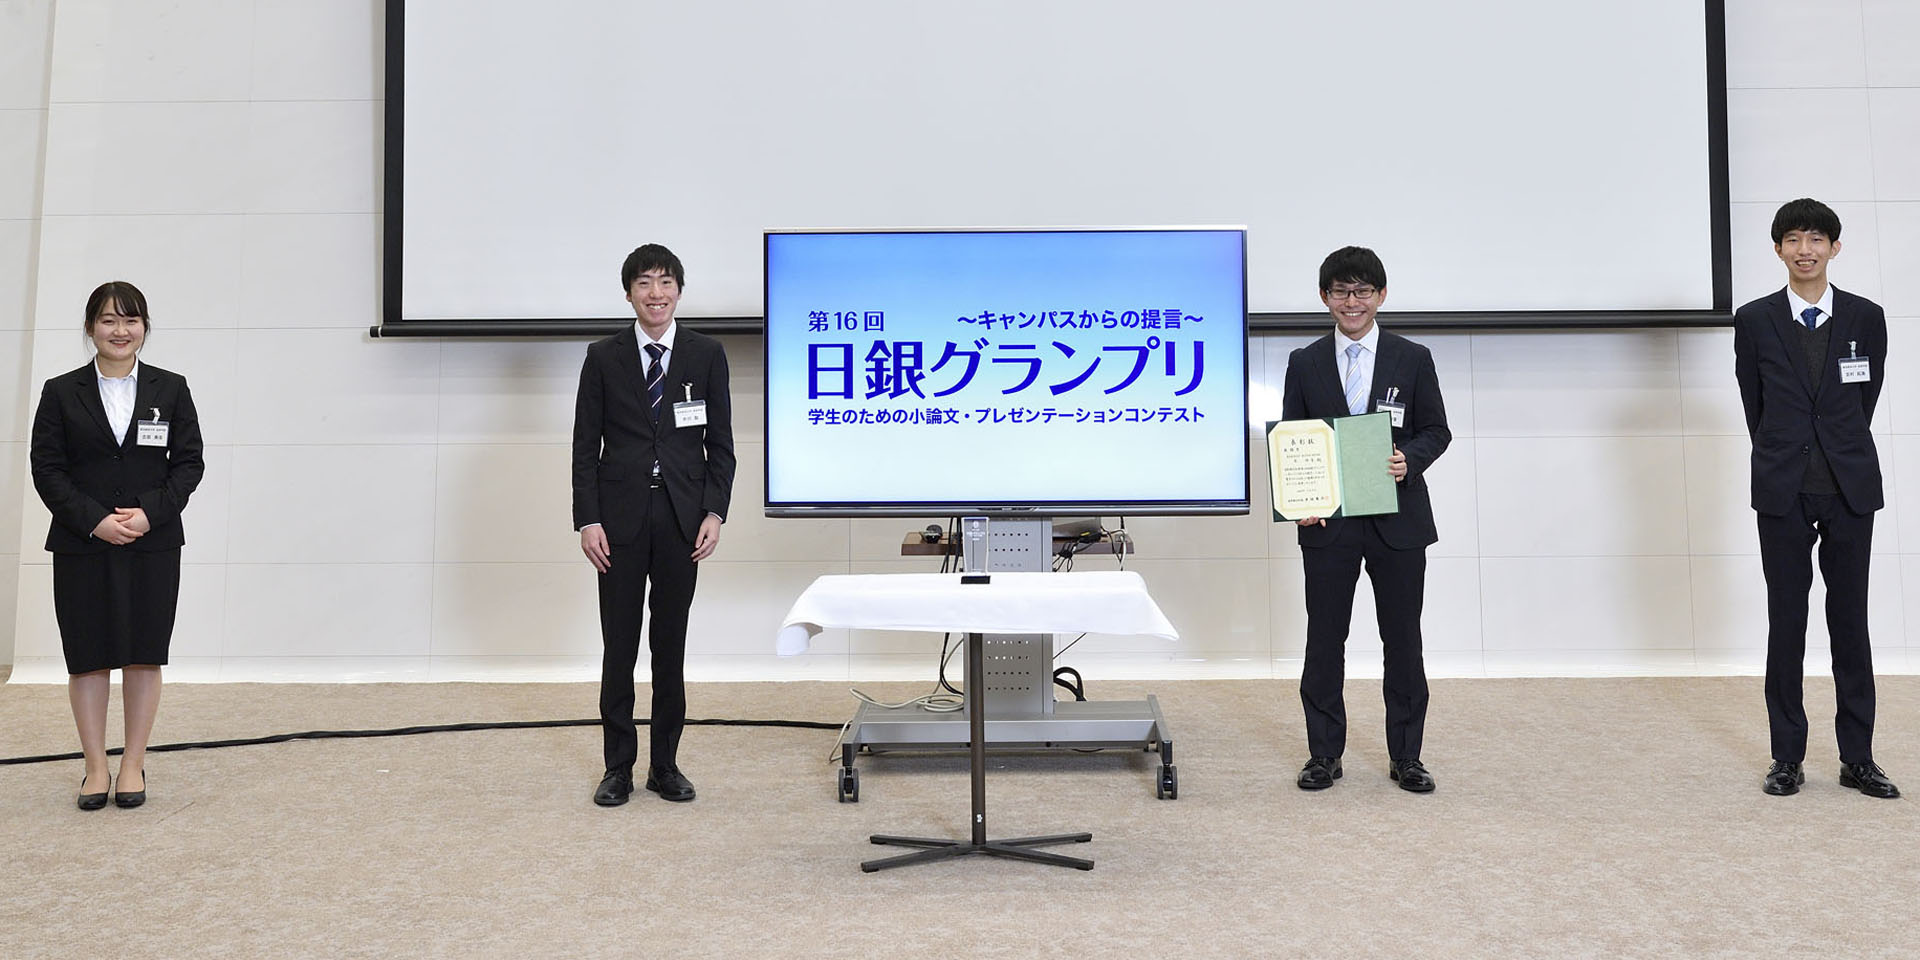 東京経済大学チームの学生4名が、間隔を空けて起立して記念撮影をしている様子